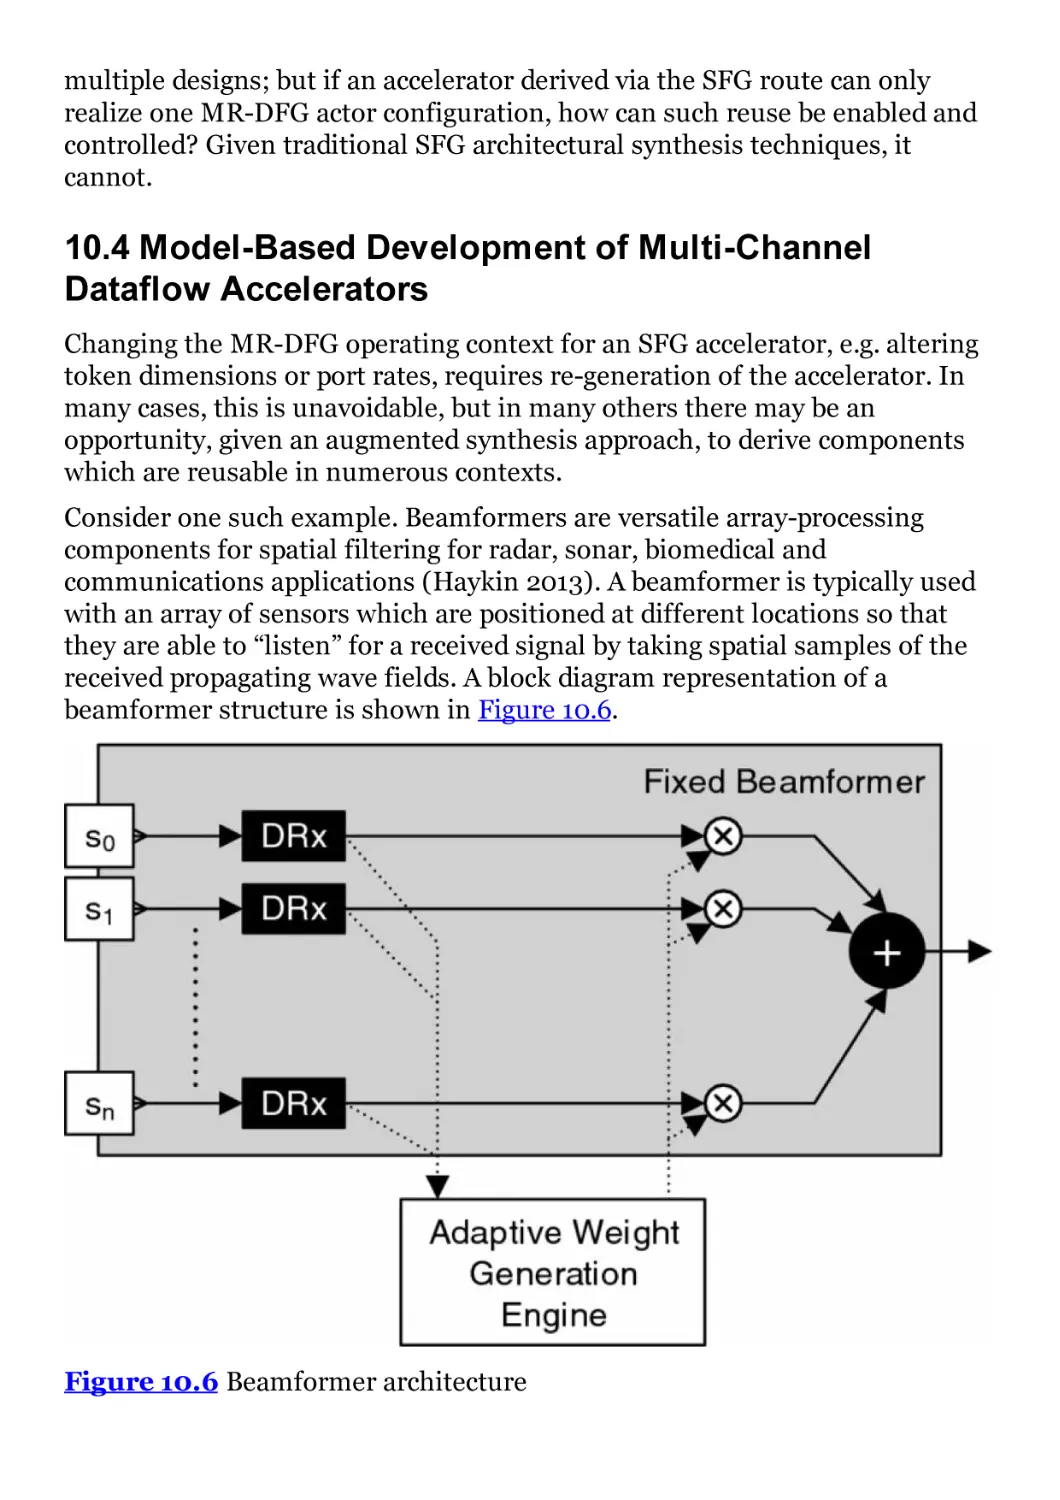 10.4 Model-Based Development of Multi-Channel Dataflow Accelerators